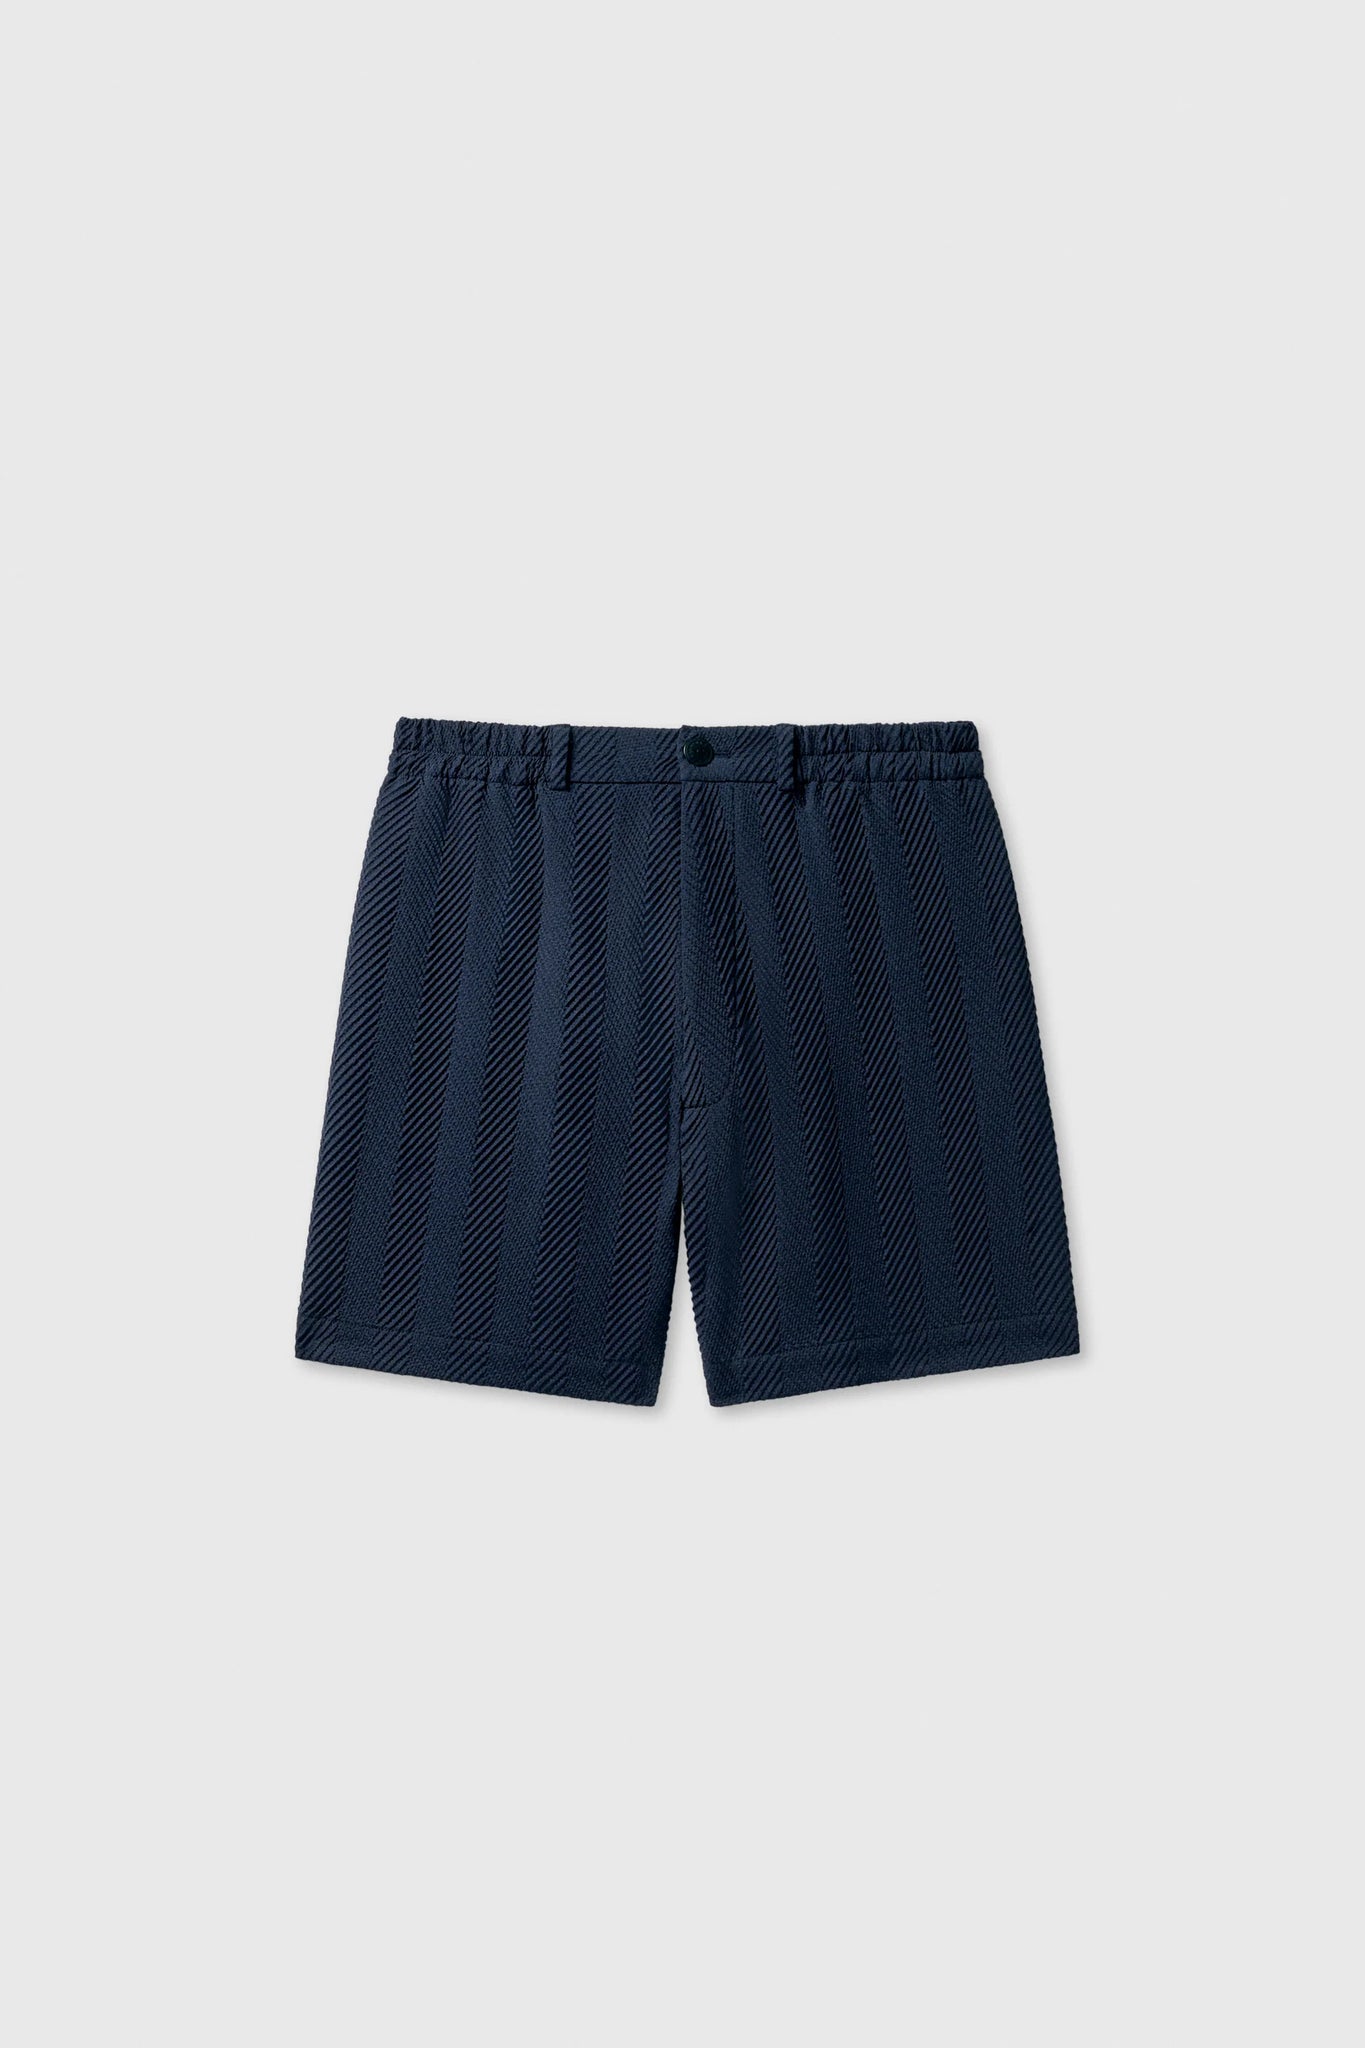 Herringbone Shorts // Navy